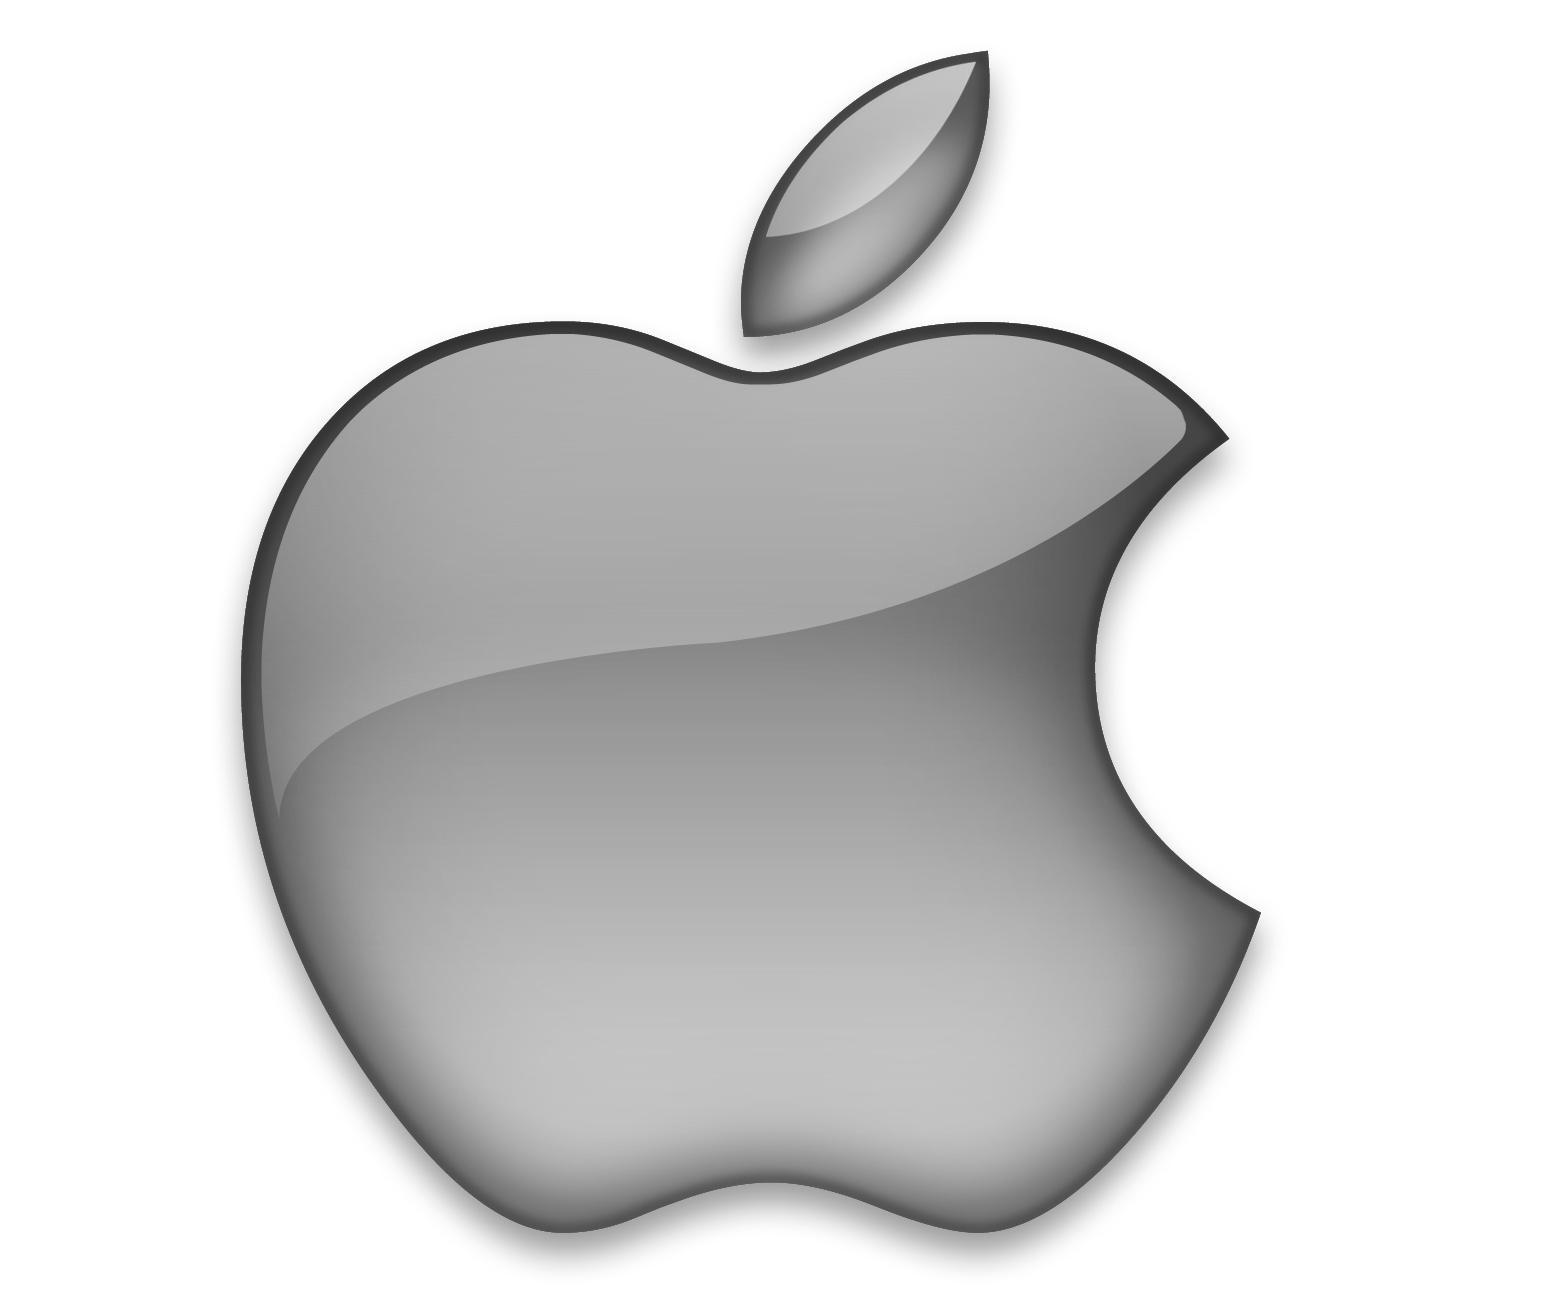 Tribunales de justicia preparan sanciones contra la transnacional Apple